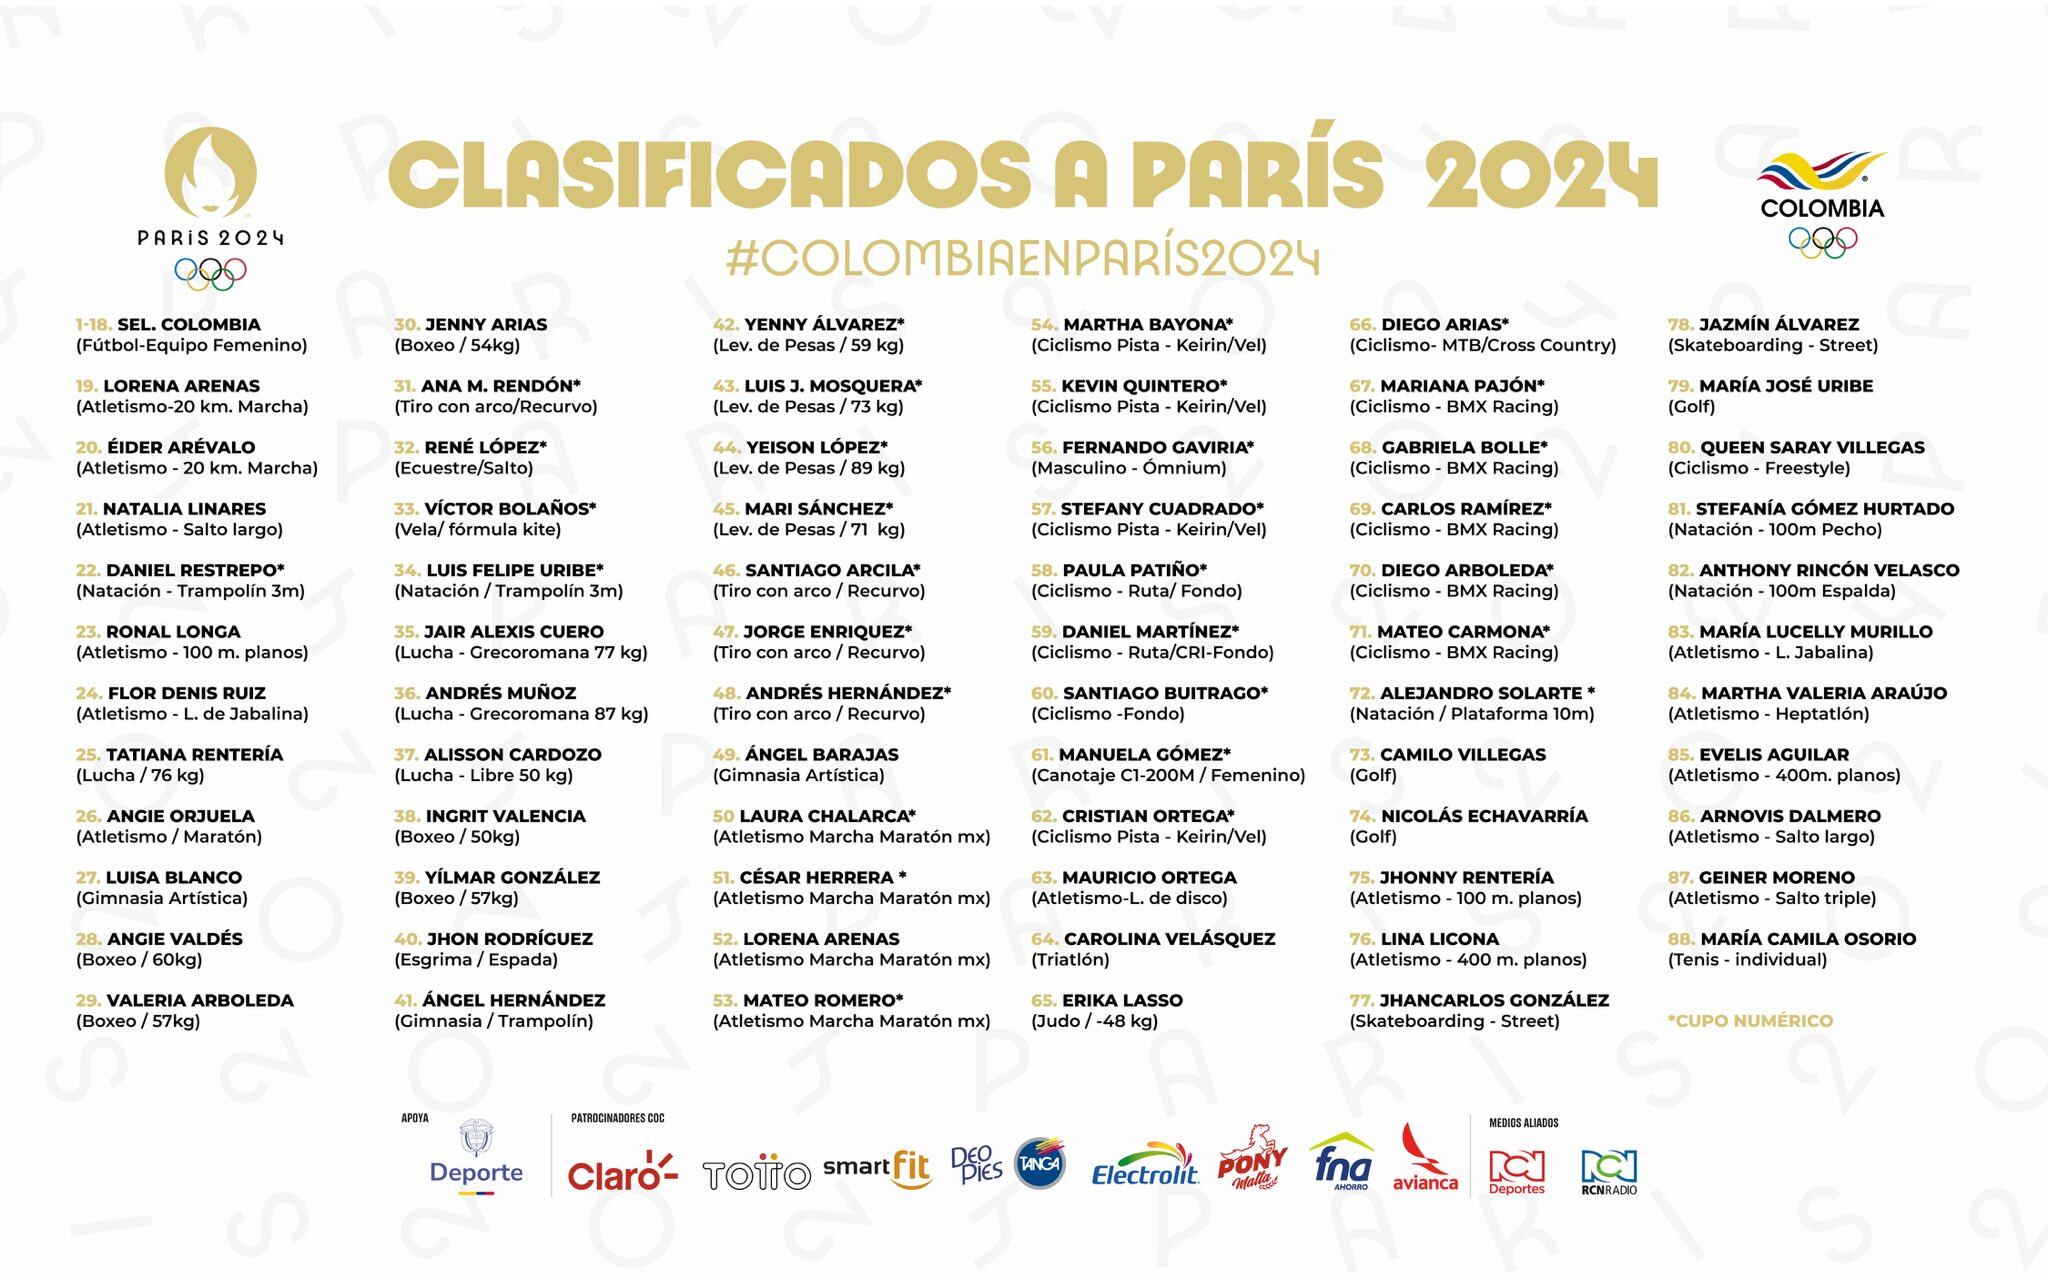 Estos son los representantes a las justas por parte de Colombia para París 2024 hasta el 3 de julio de 2024 - crédito X/ @OlimpicoCol